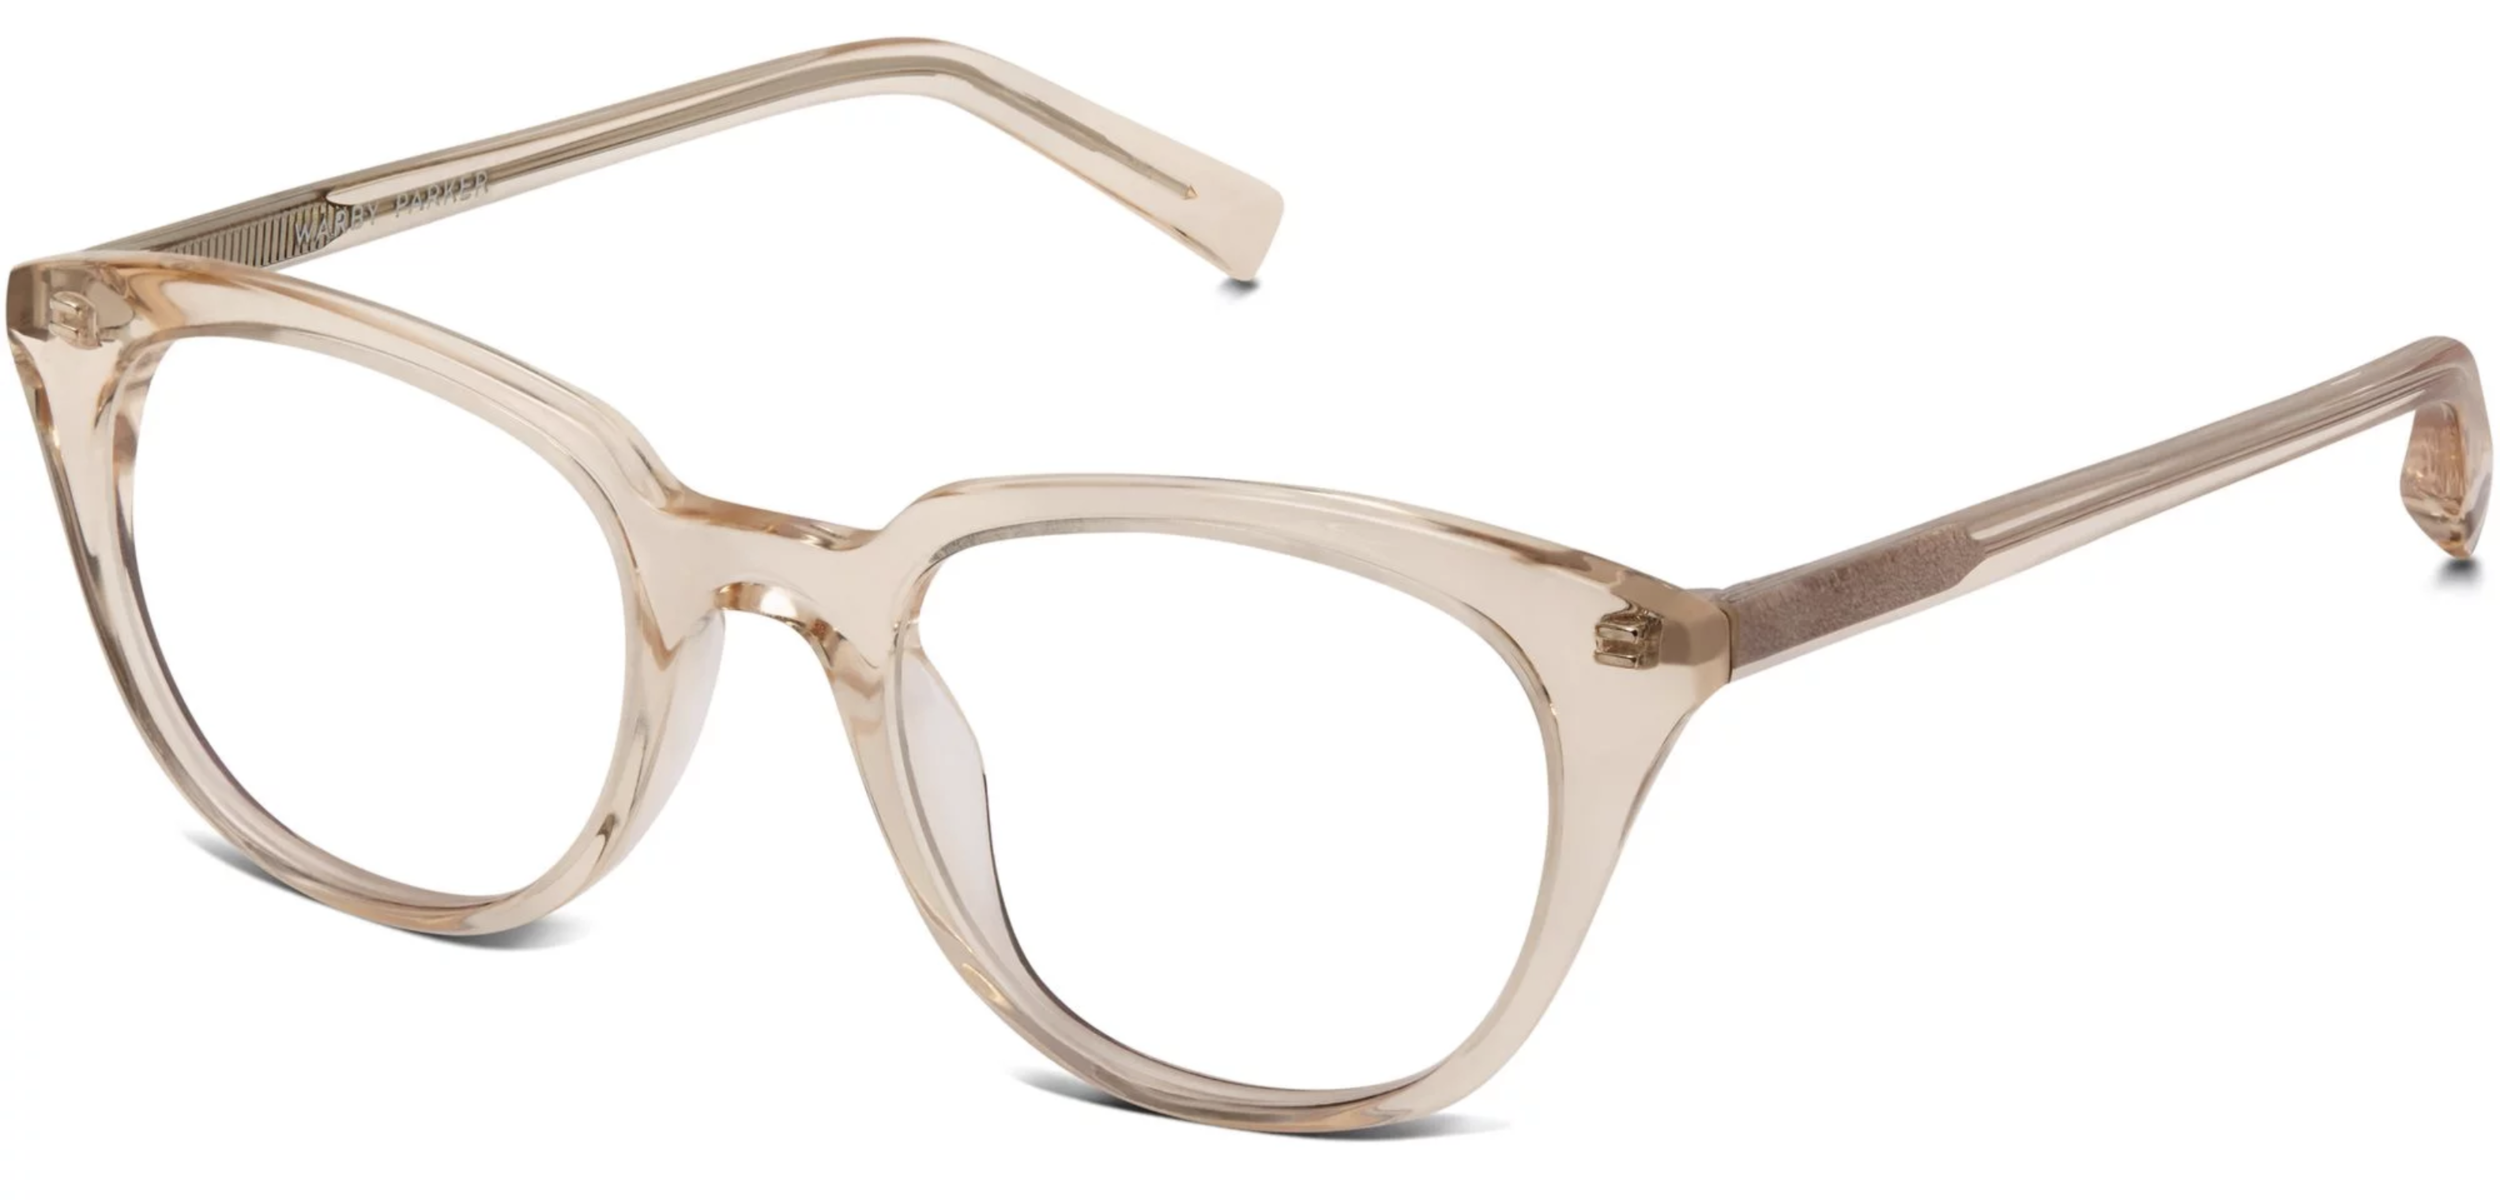 Copy of Copy of Copy of Copy of Warby Parker Eyeglasses Frames